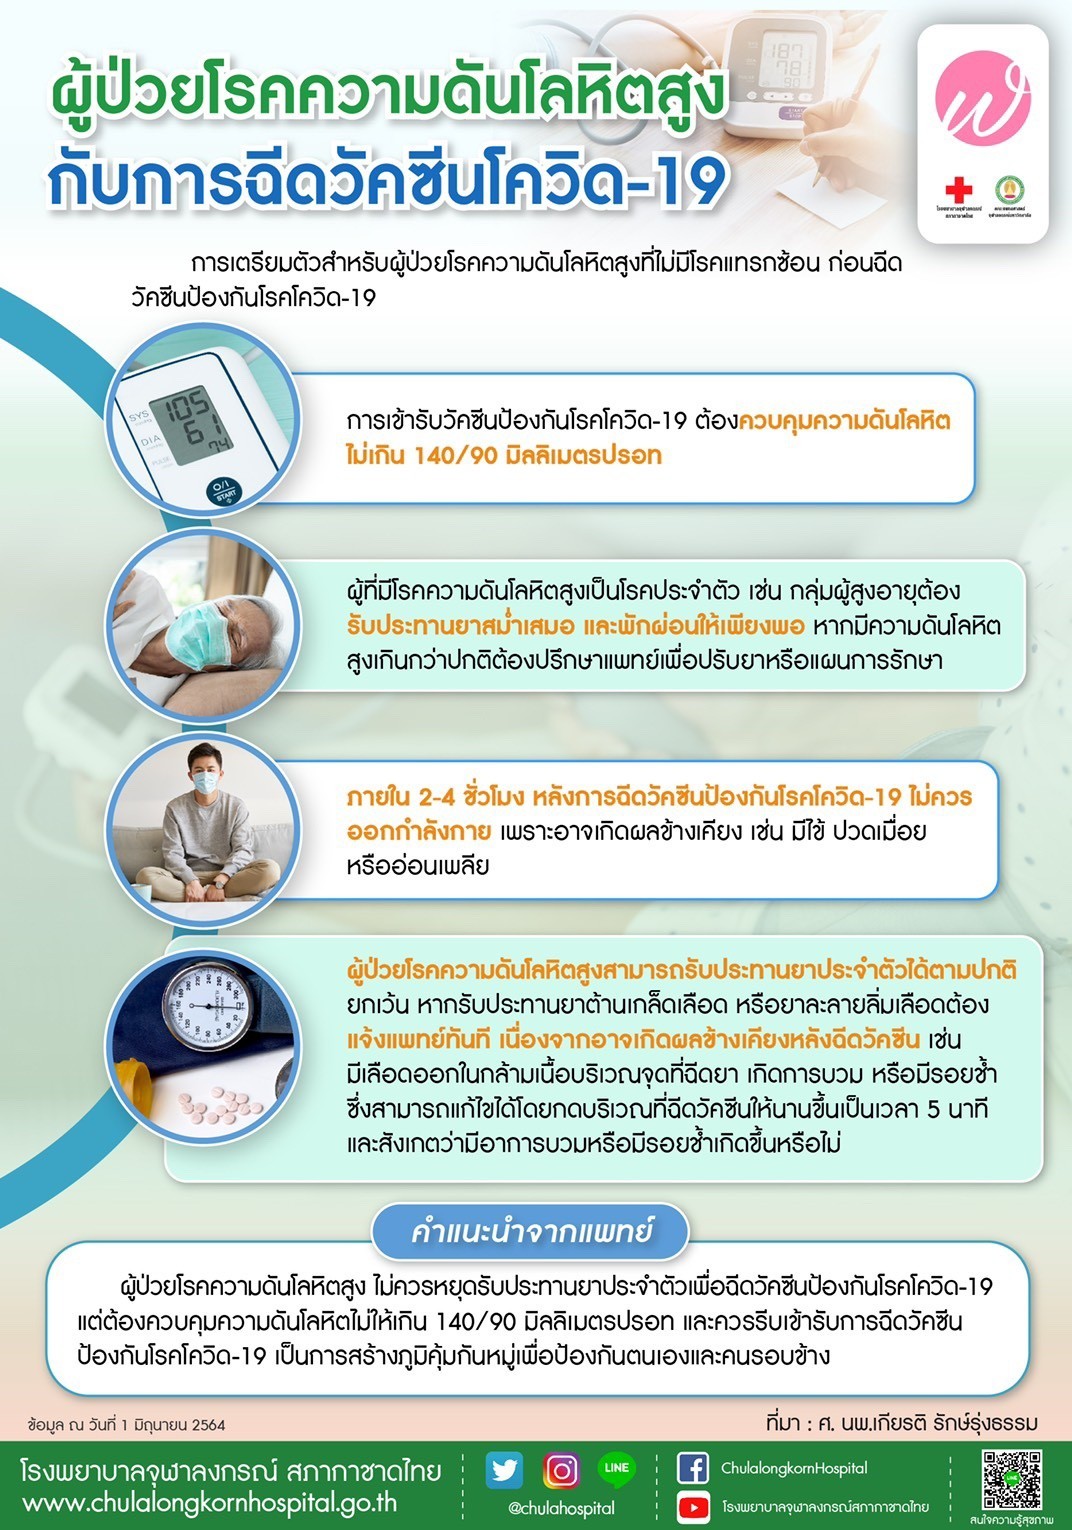 ผู้ป่วยโรคความดันโลหิตสูงกับการฉีดวัคซีนโควิด-19 - โรงพยาบาลจุฬาลงกรณ์  สภากาชาดไทย